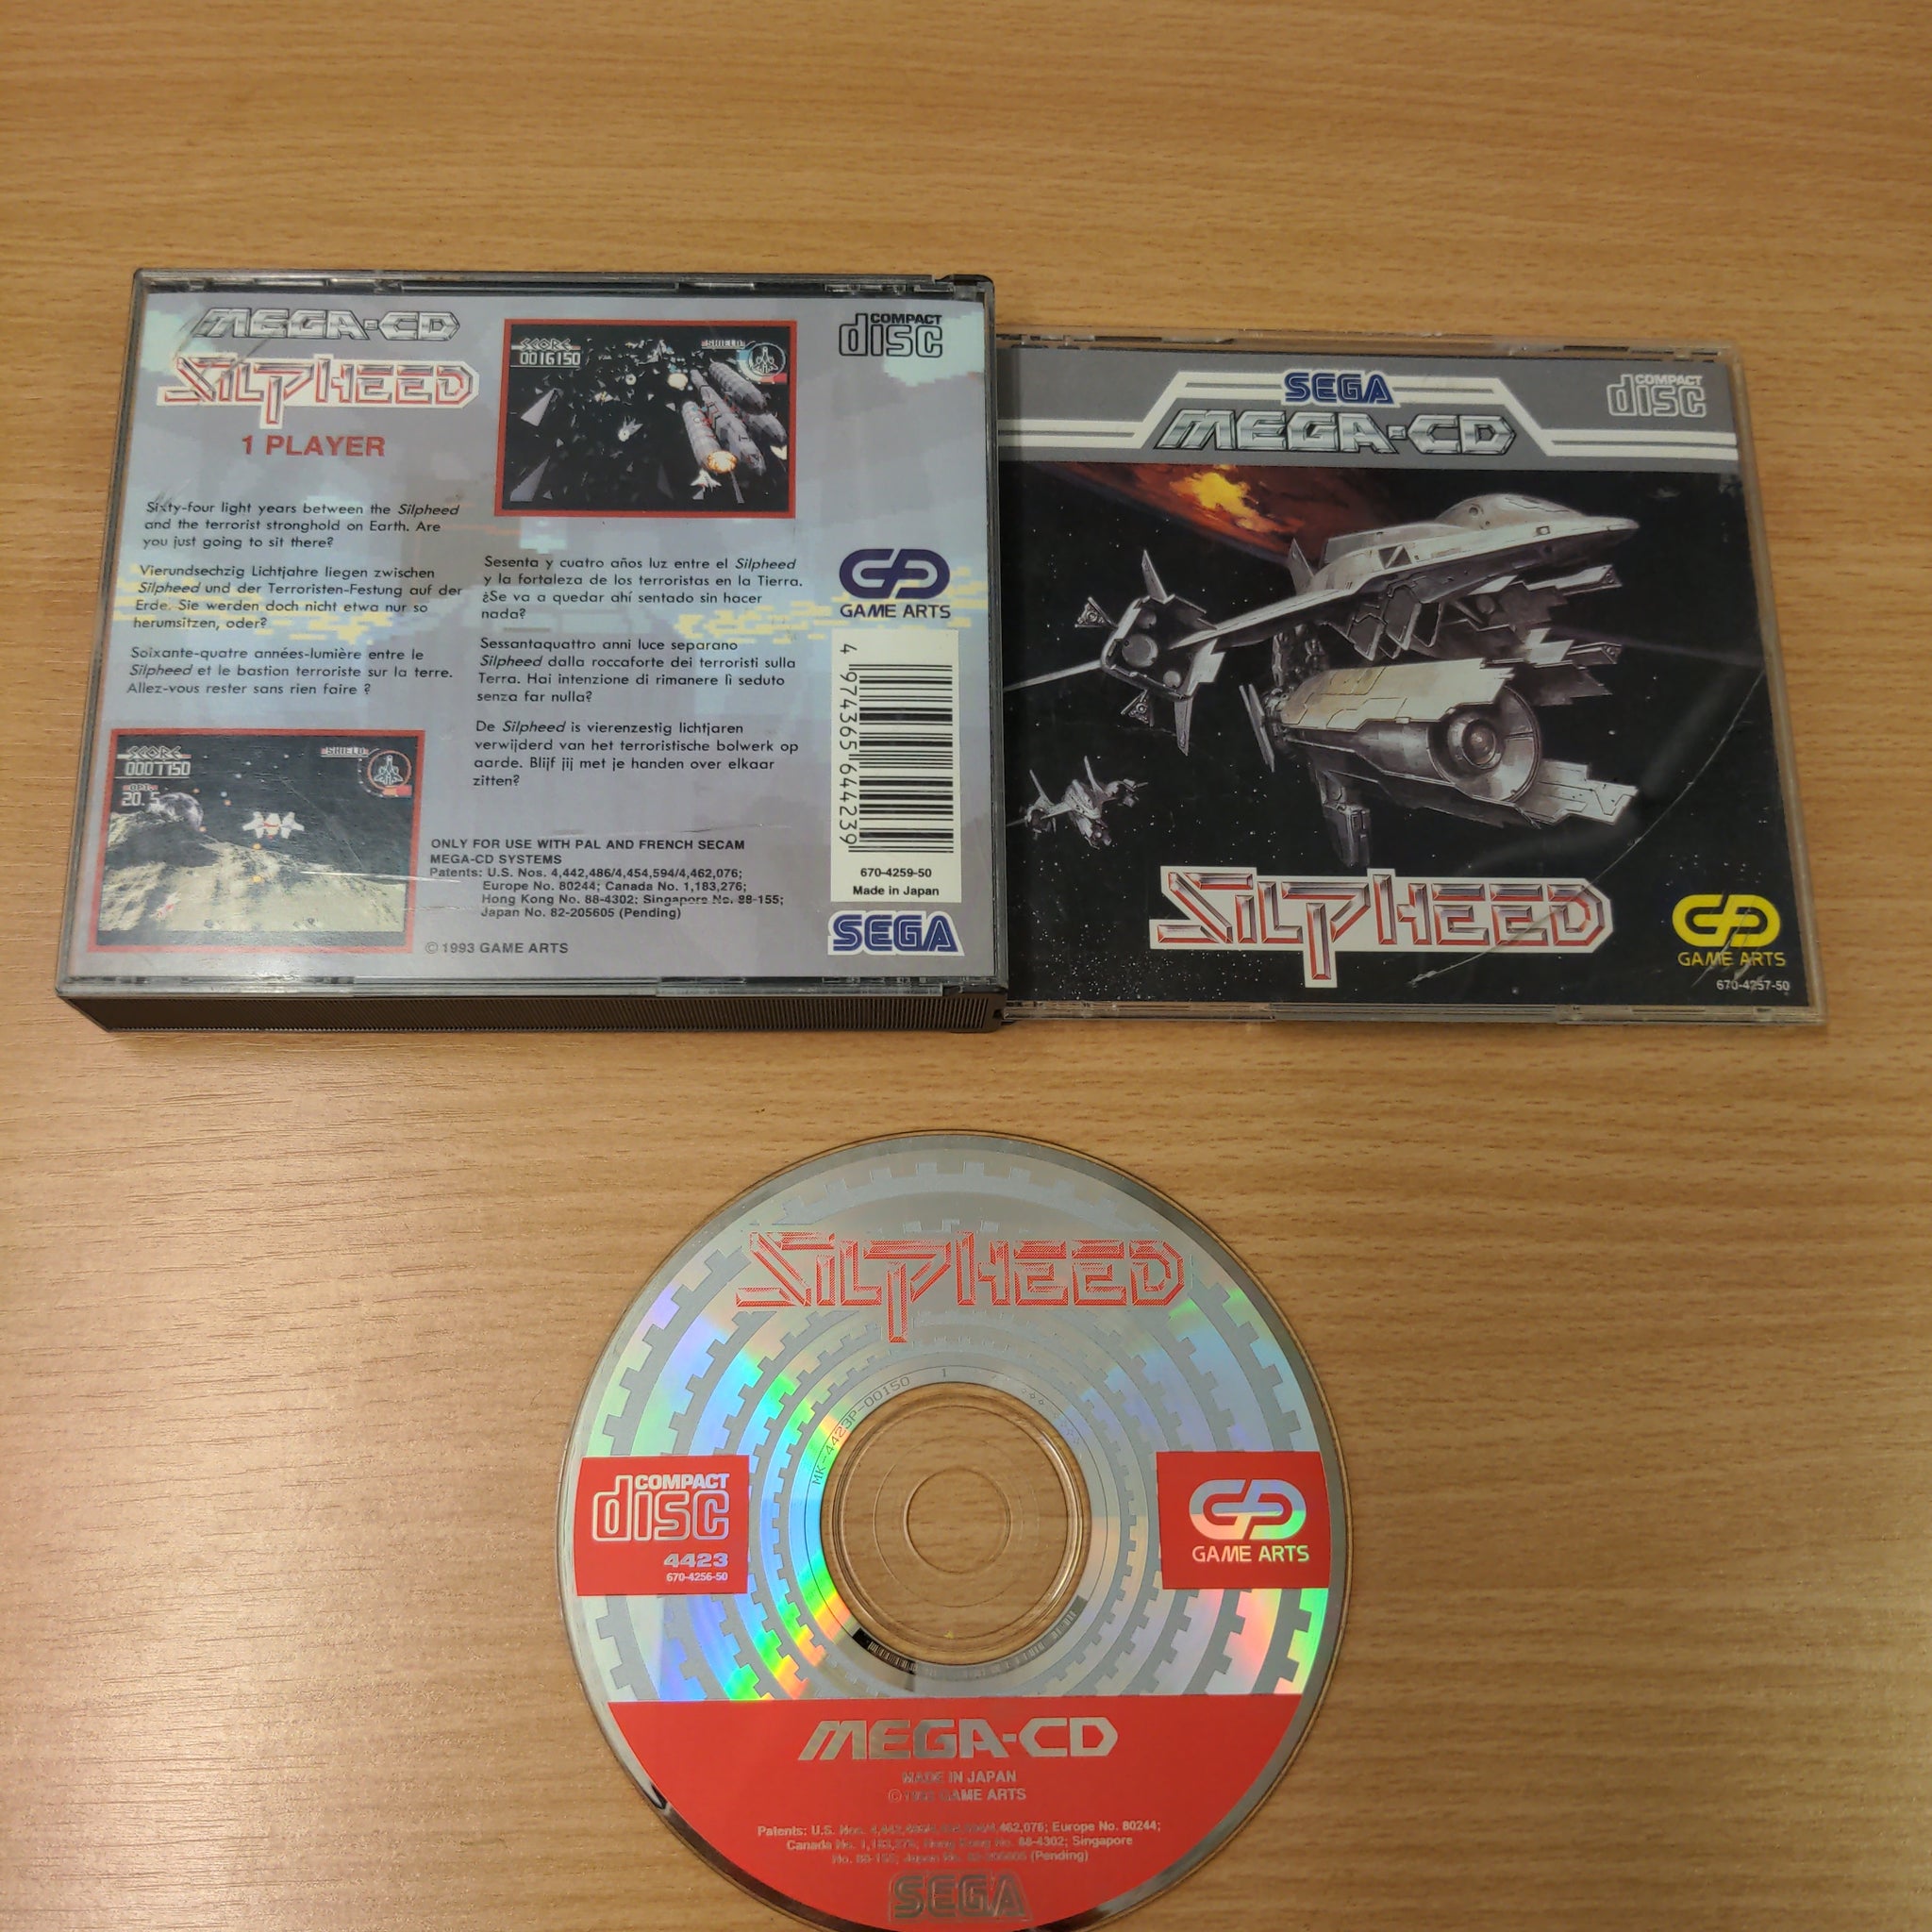 Silpheed Sega Mega-CD game